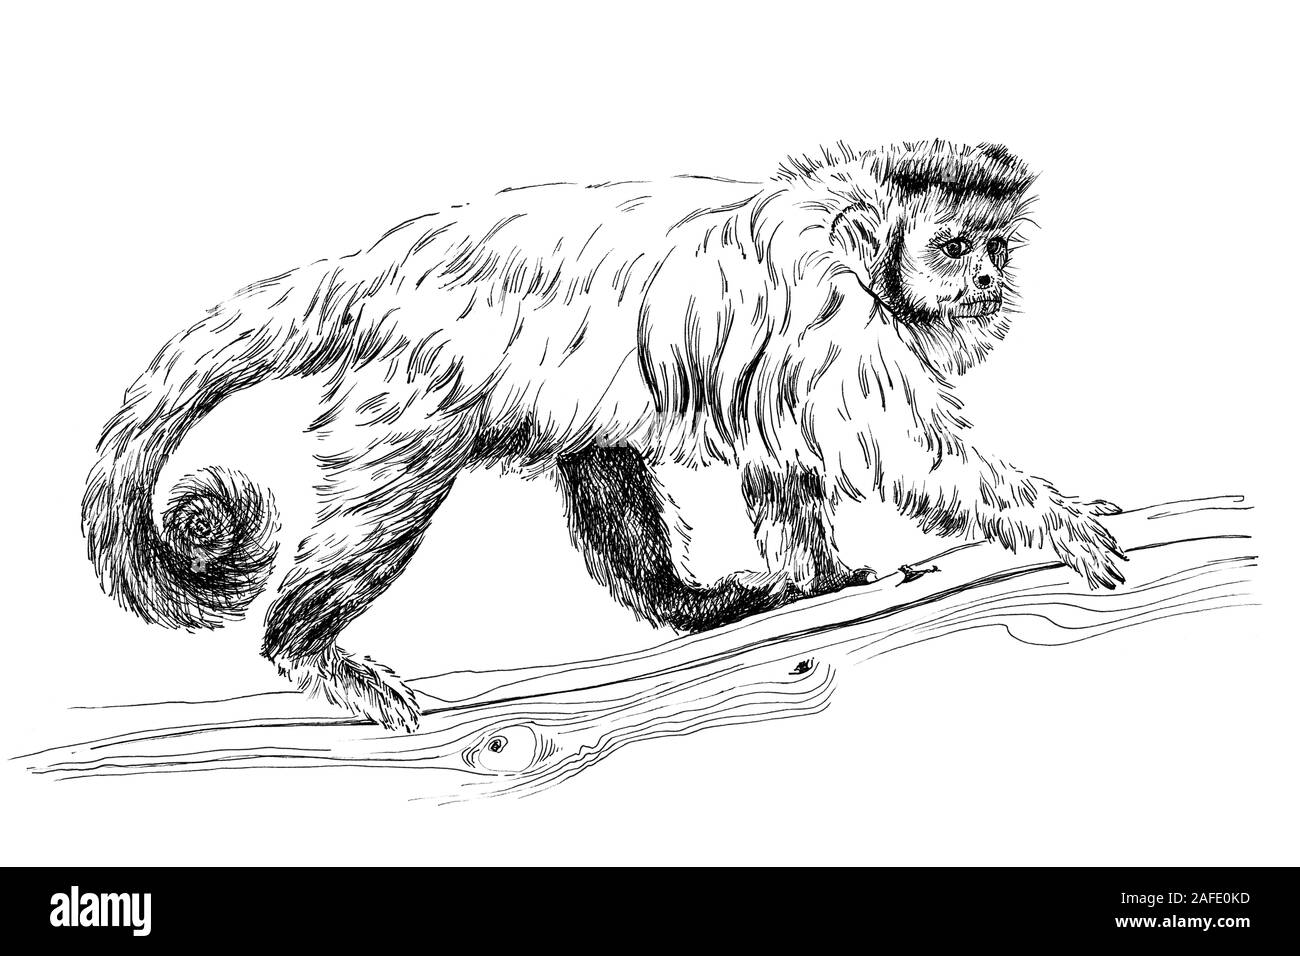 Hand monkey gezeichnet, Skizze Grafik Schwarzweiß-Bild auf weißem Hintergrund (Originale, keine tastung) Stockfoto